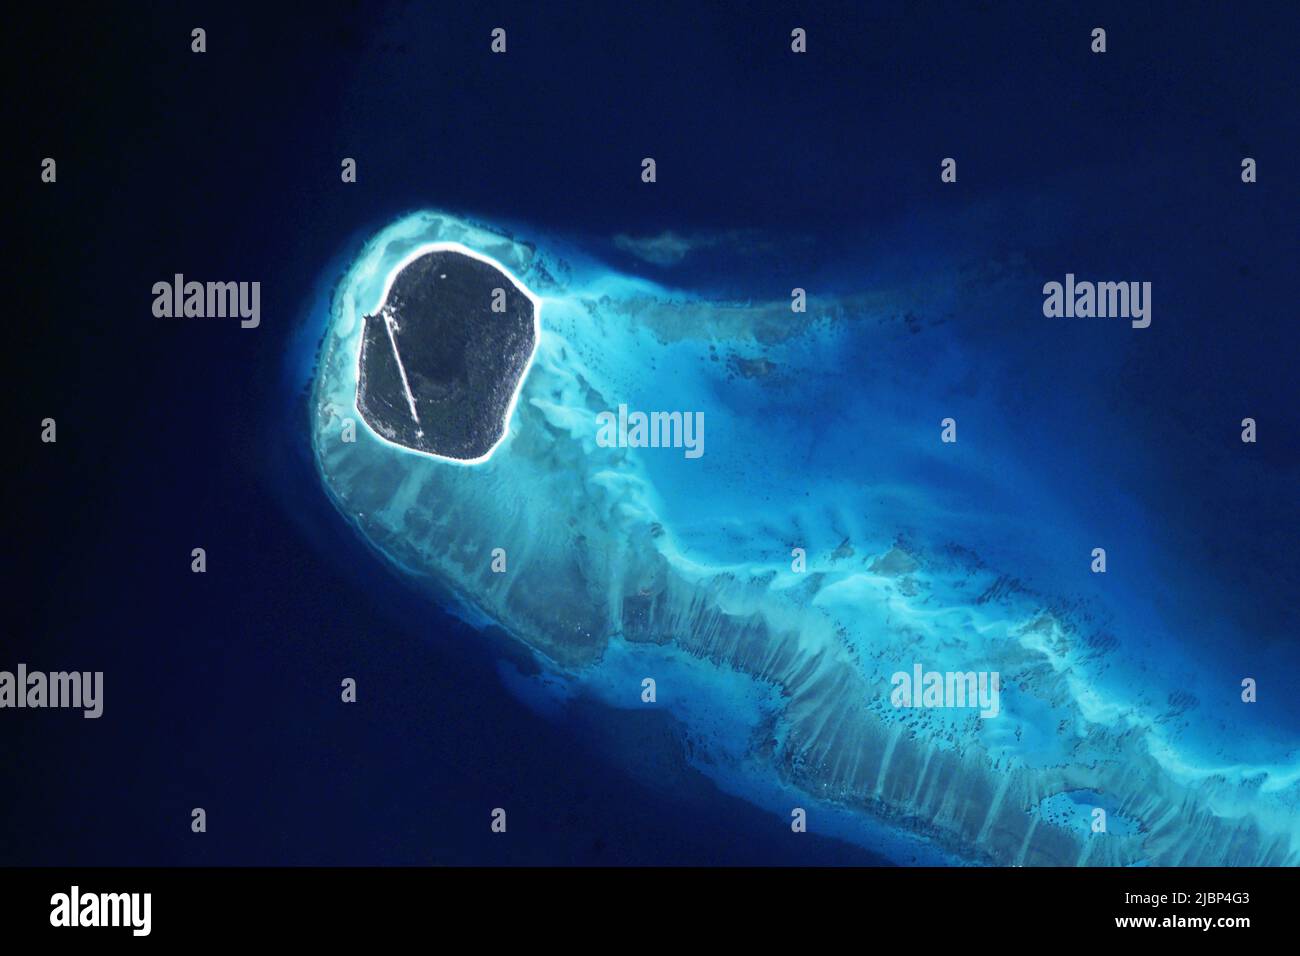 Île dans l'océan de l'espace. Éléments de cette image fournis par la NASA. Photo de haute qualité Banque D'Images